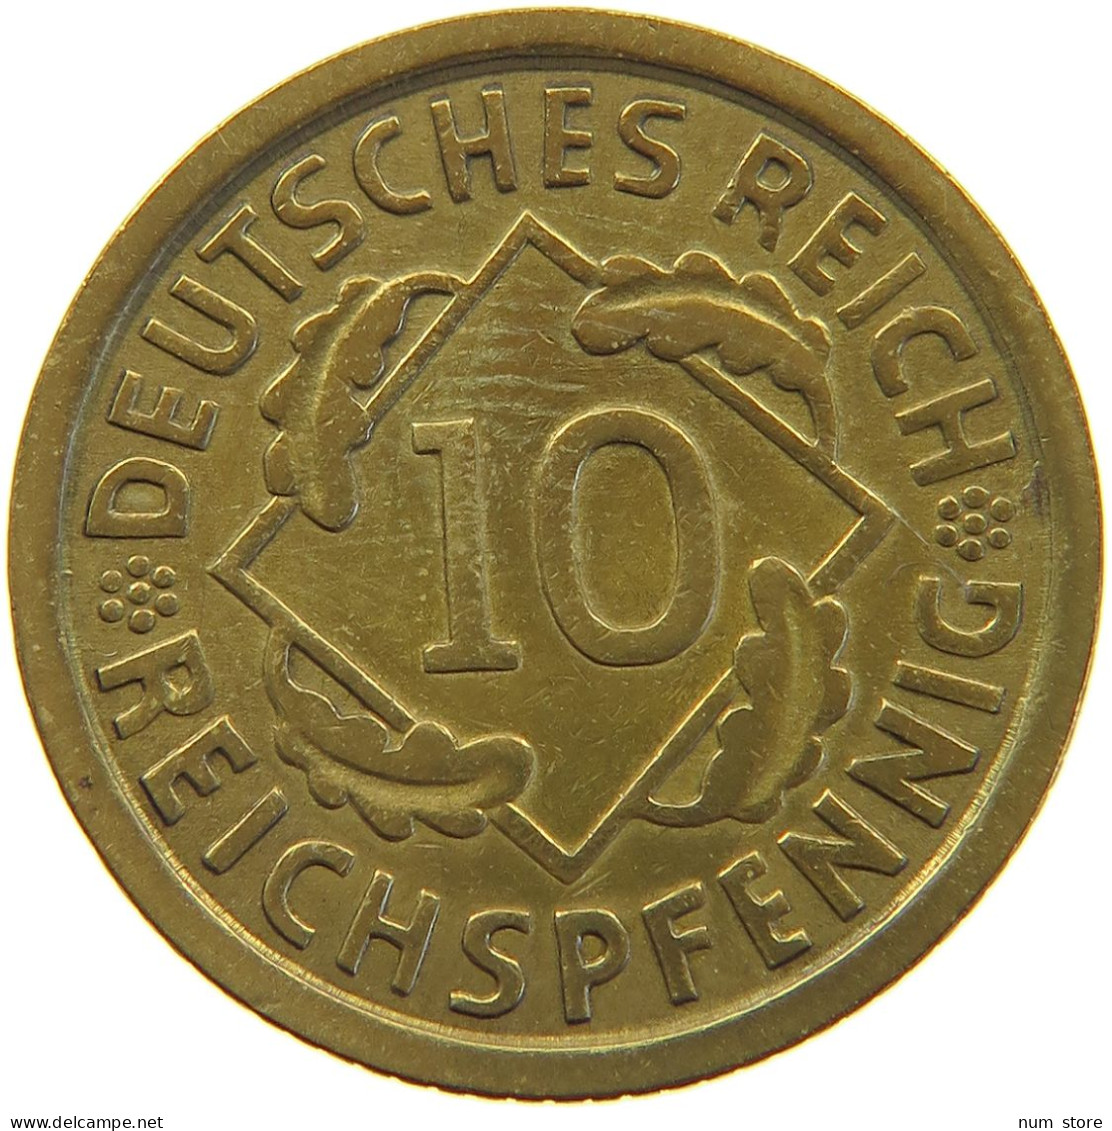 WEIMARER REPUBLIK 10 PFENNIG 1929 E  #a054 0585 - 10 Rentenpfennig & 10 Reichspfennig